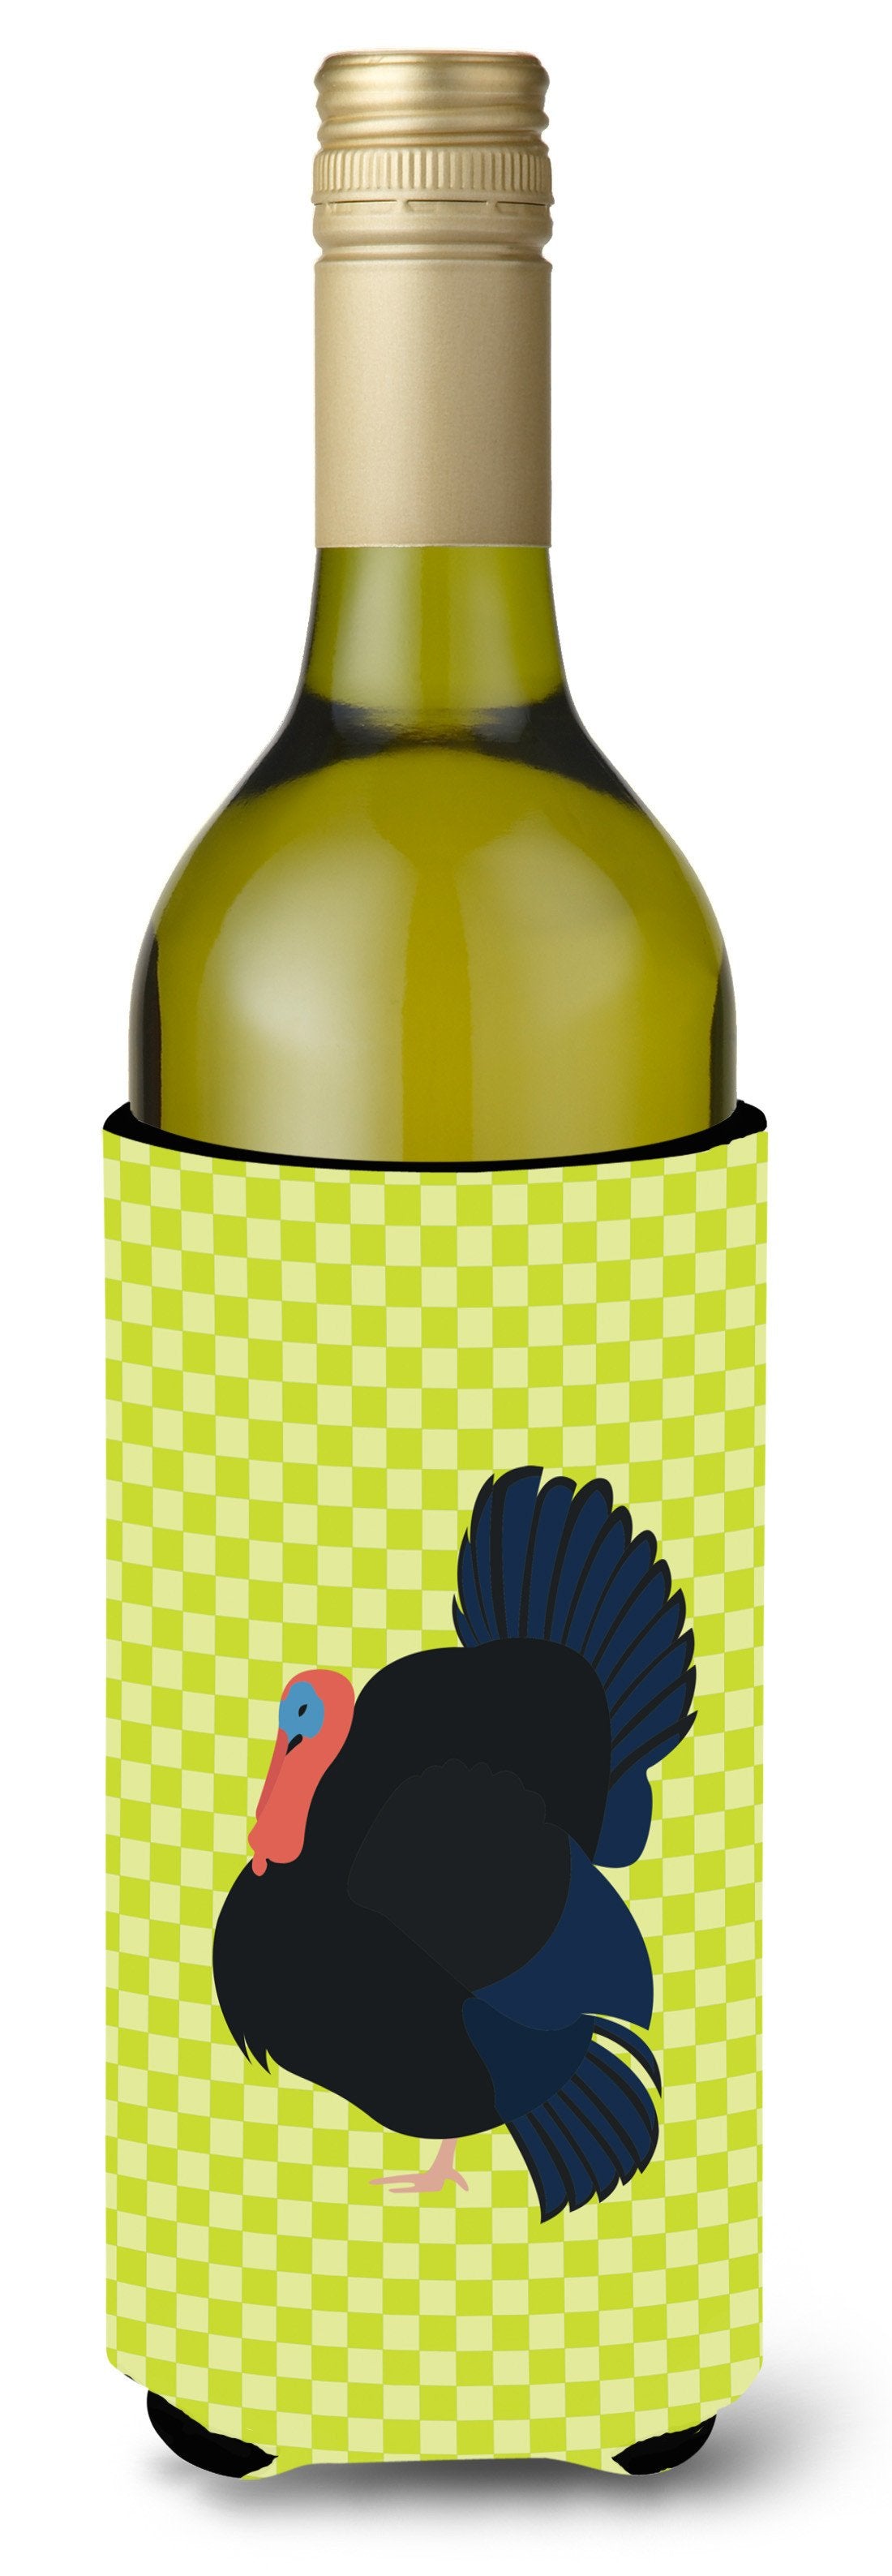 Norfolk Black Turkey Green Wine Bottle Beverge Insulator Hugger BB7811LITERK by Caroline's Treasures